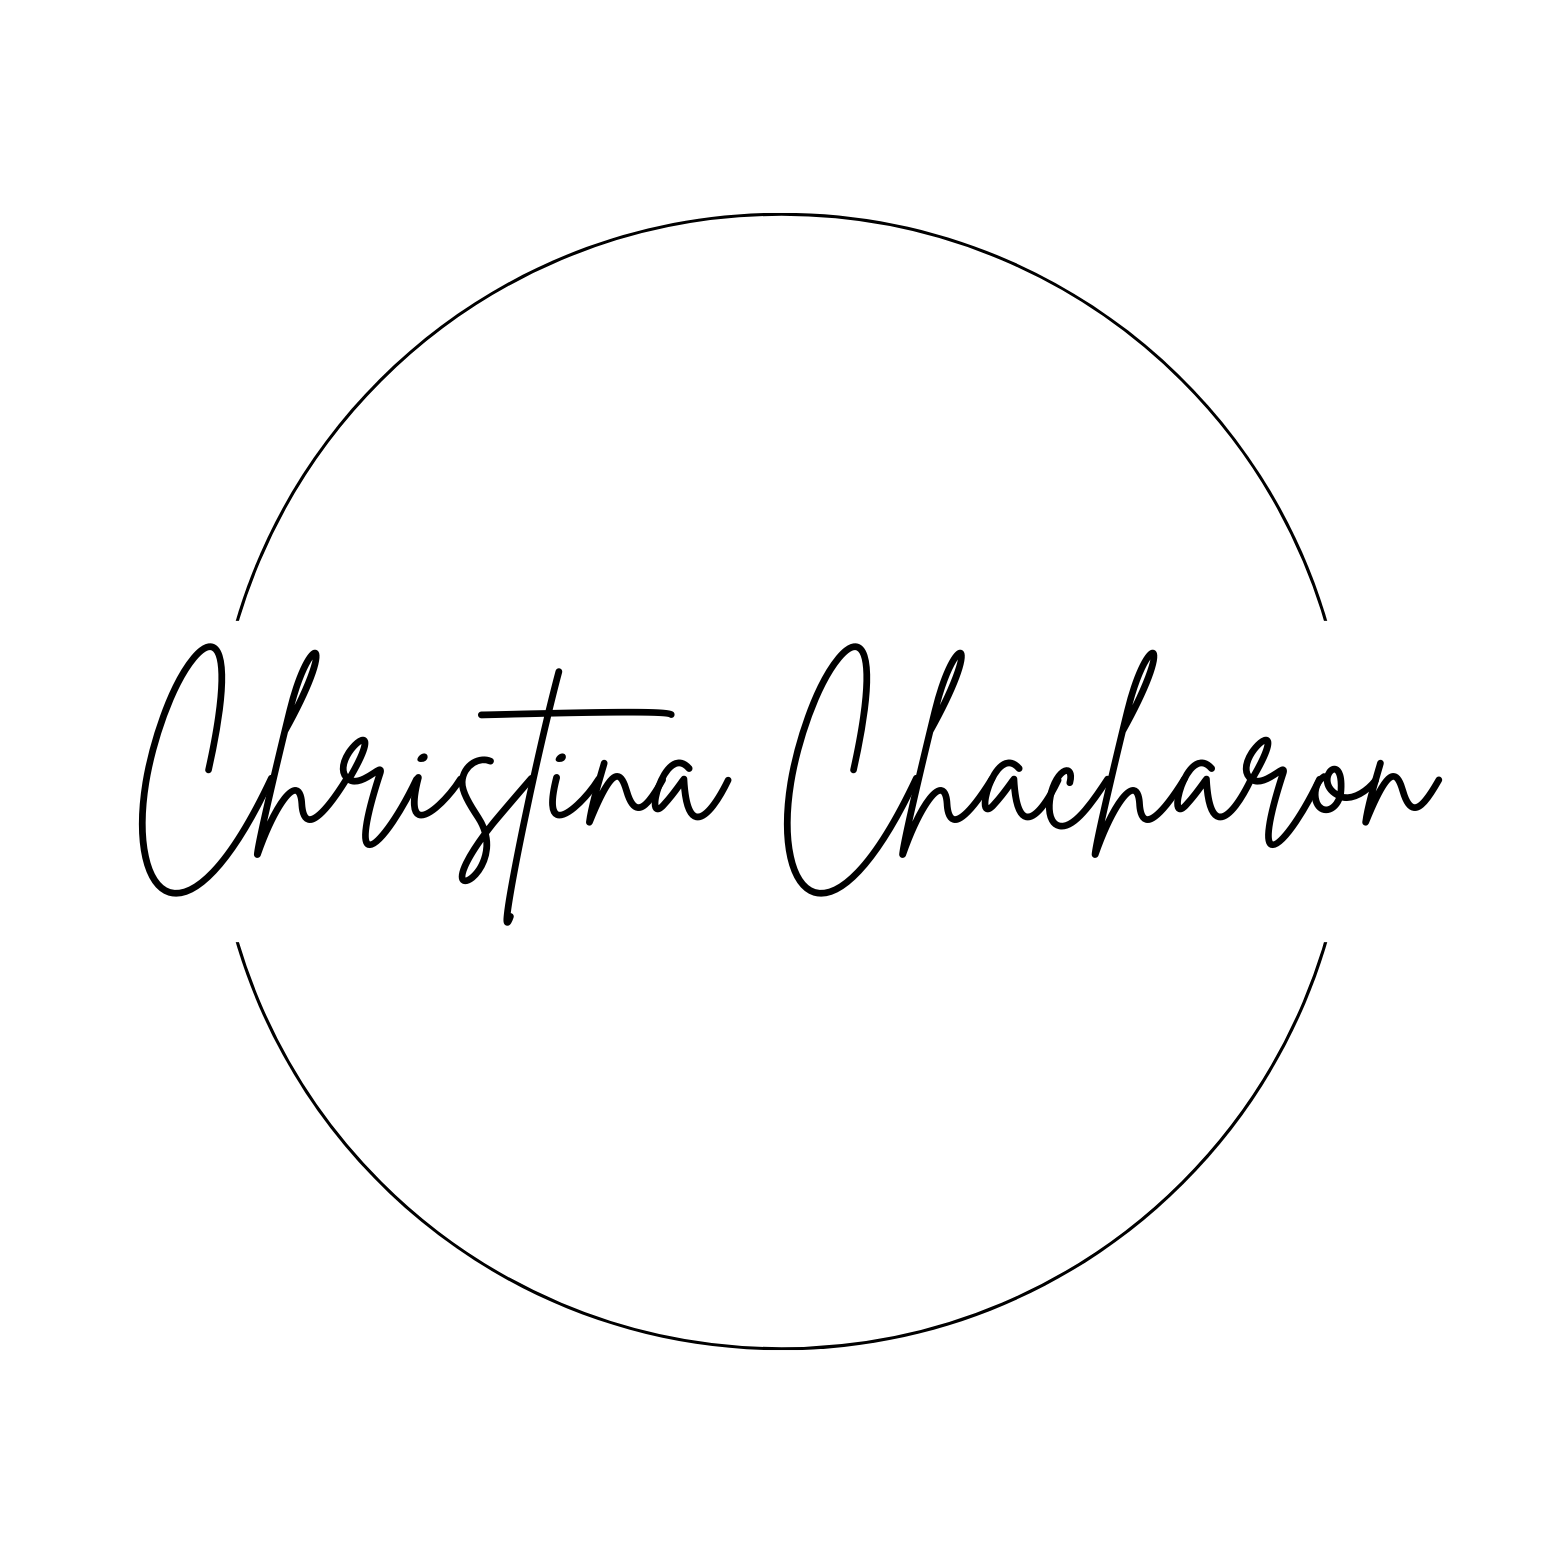 Christina Chacharon Photography